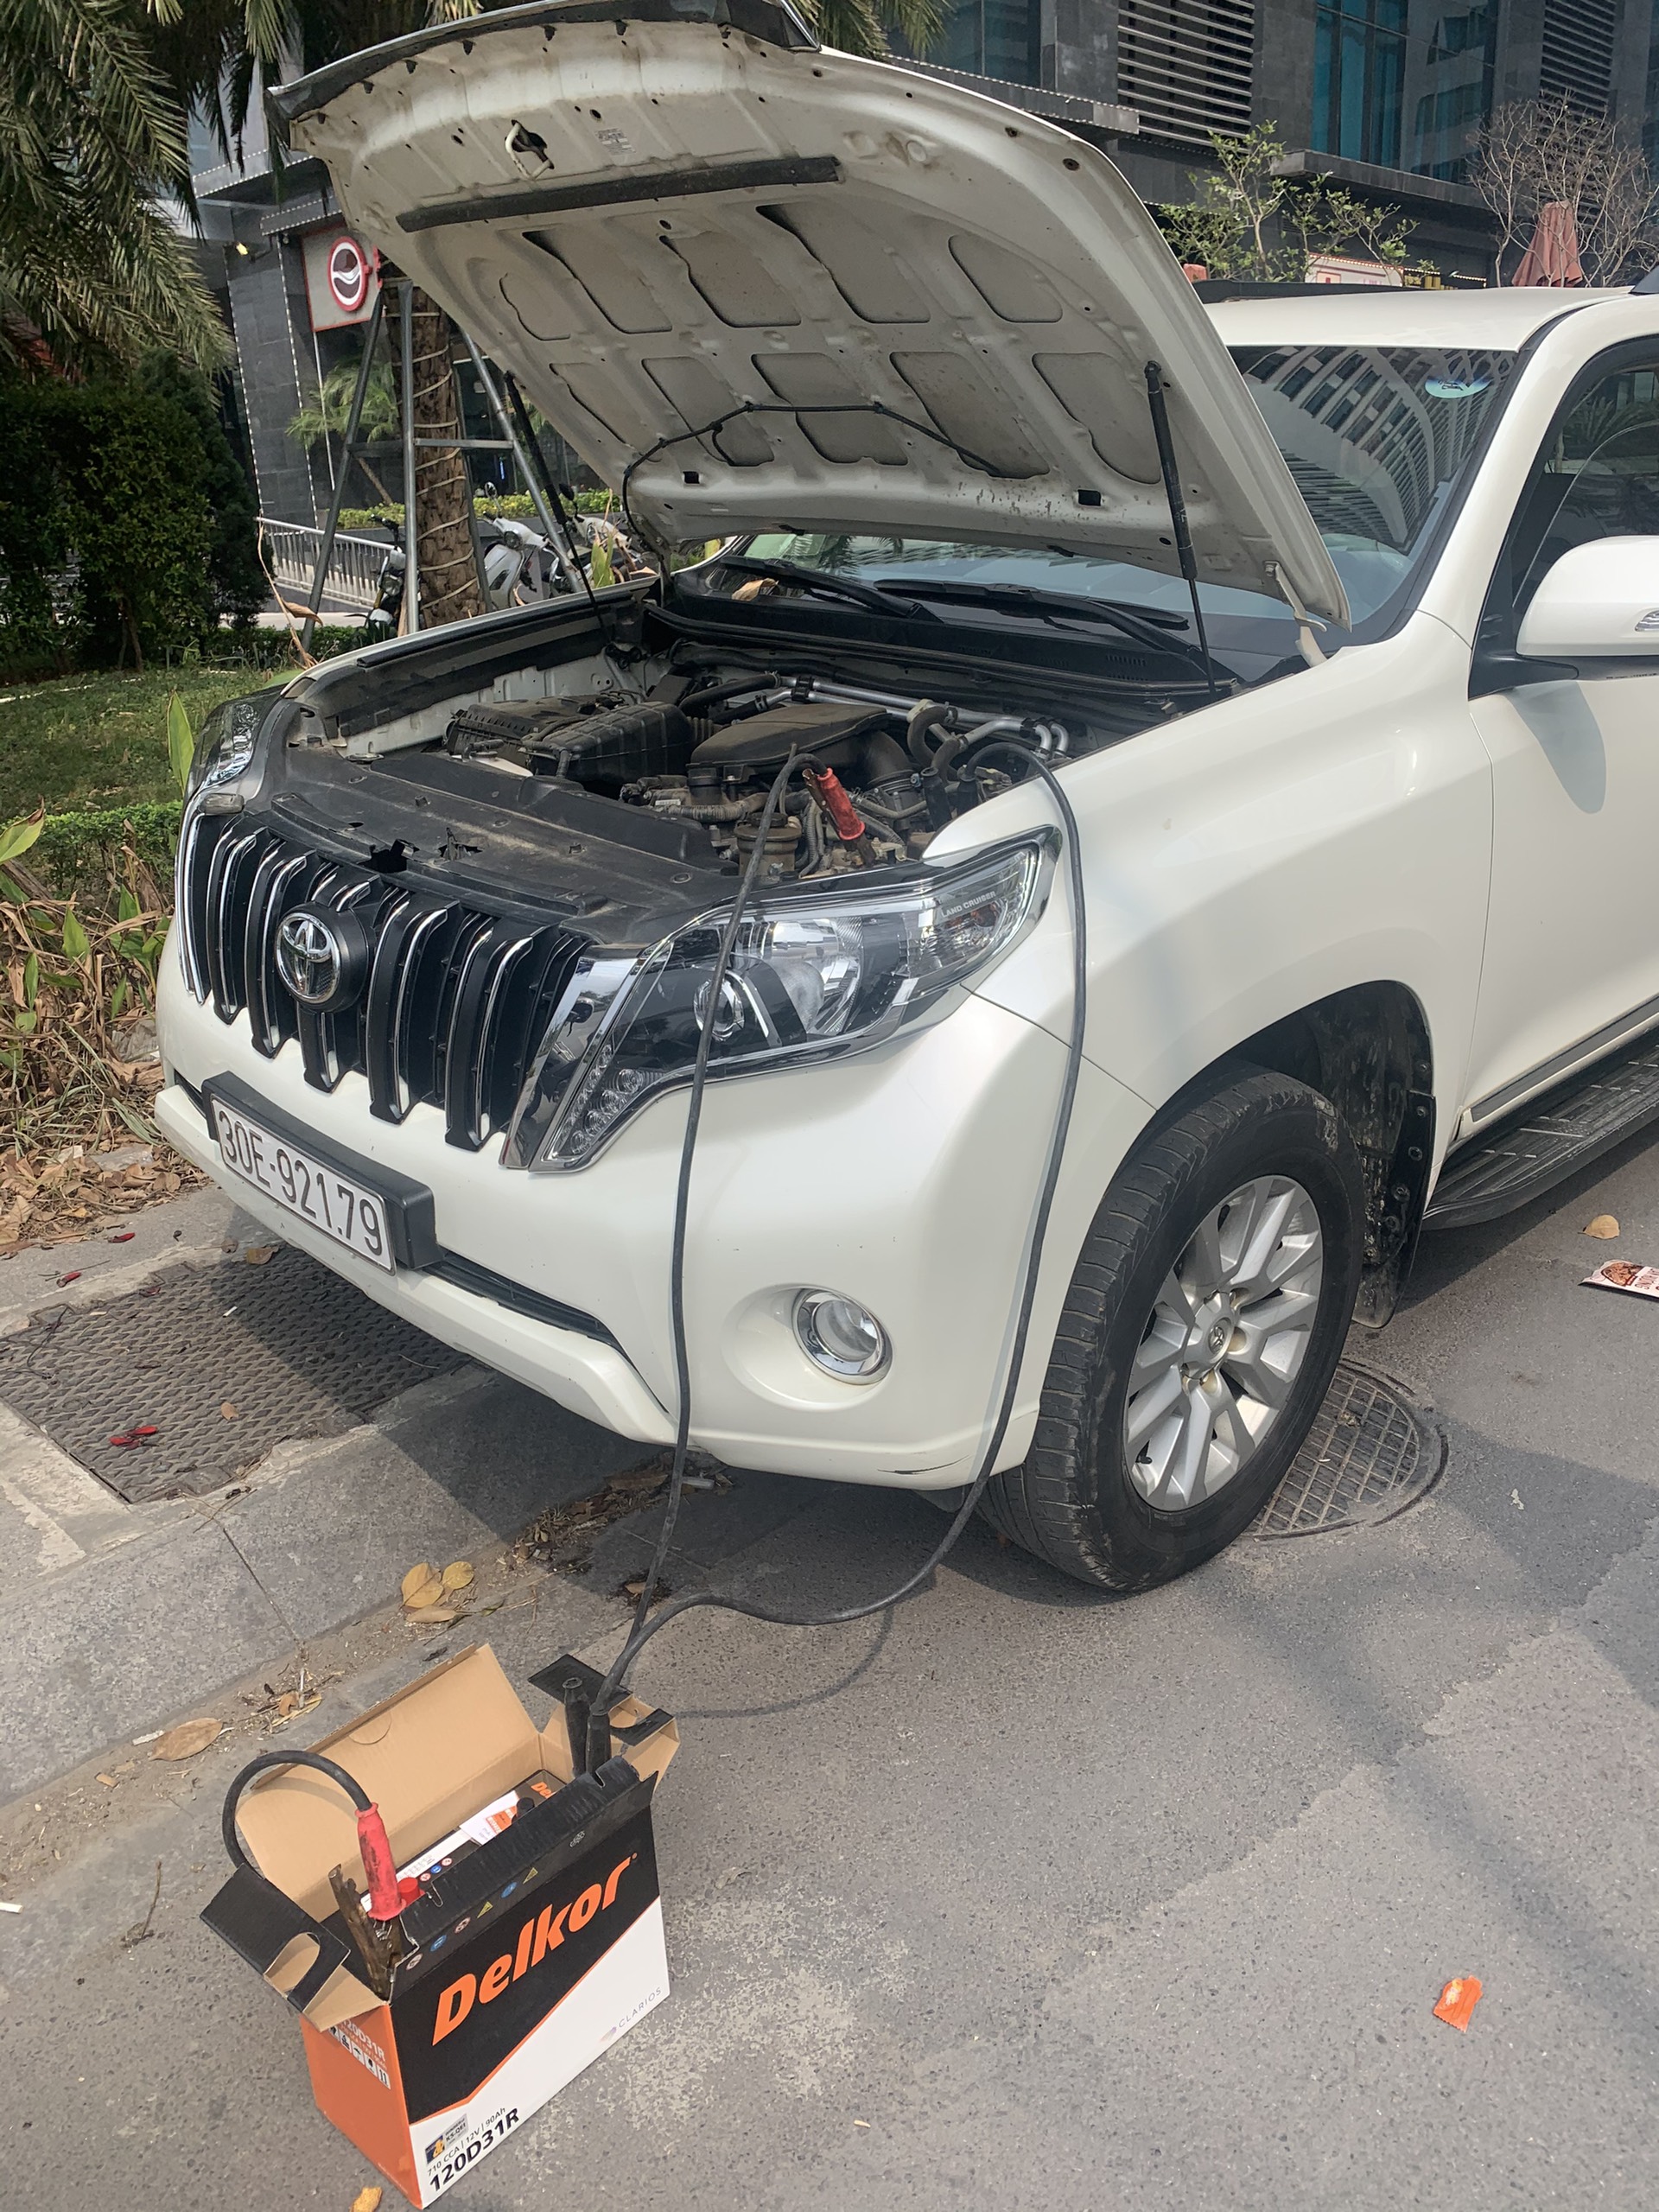 Cứu hộ câu Kích sạc thay bình ắc quy ô tô tại Quận Bình Tân TP HCM